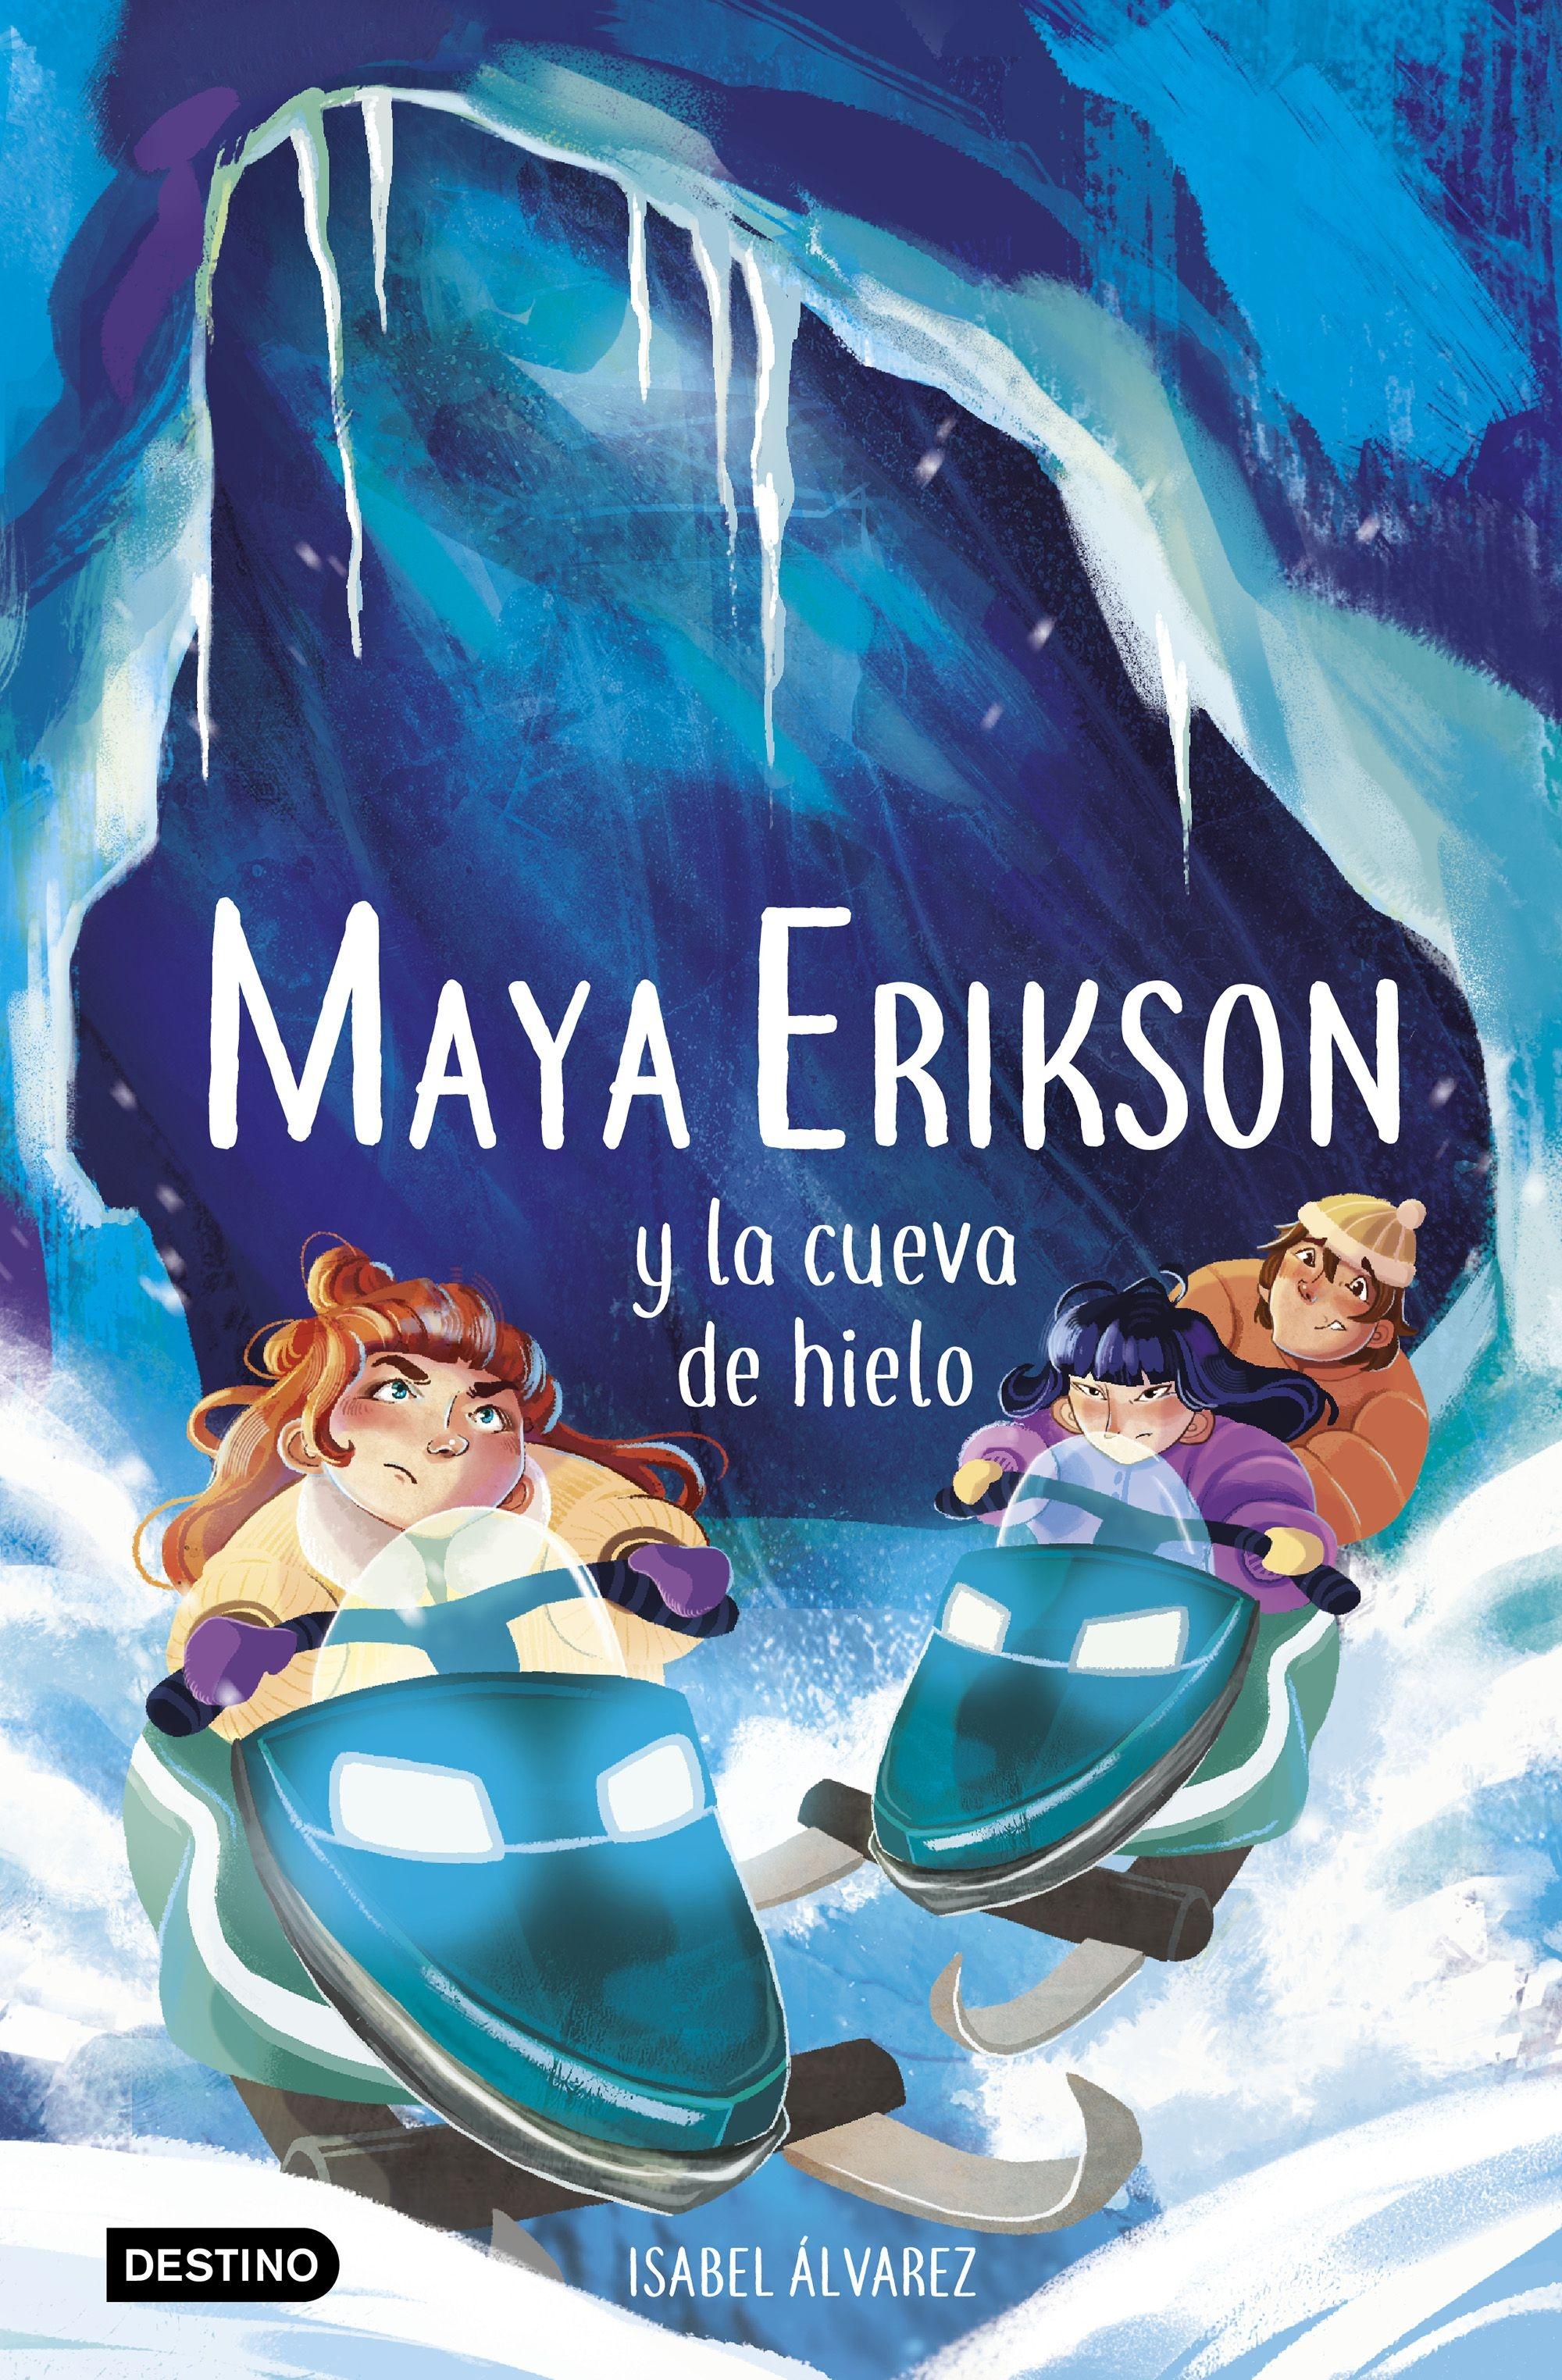 Maya Erikson 3. Maya Erikson y la cueva de hielo "Un emocionante libro de aventuras para niños y niñas valientes (Edad: 7,"